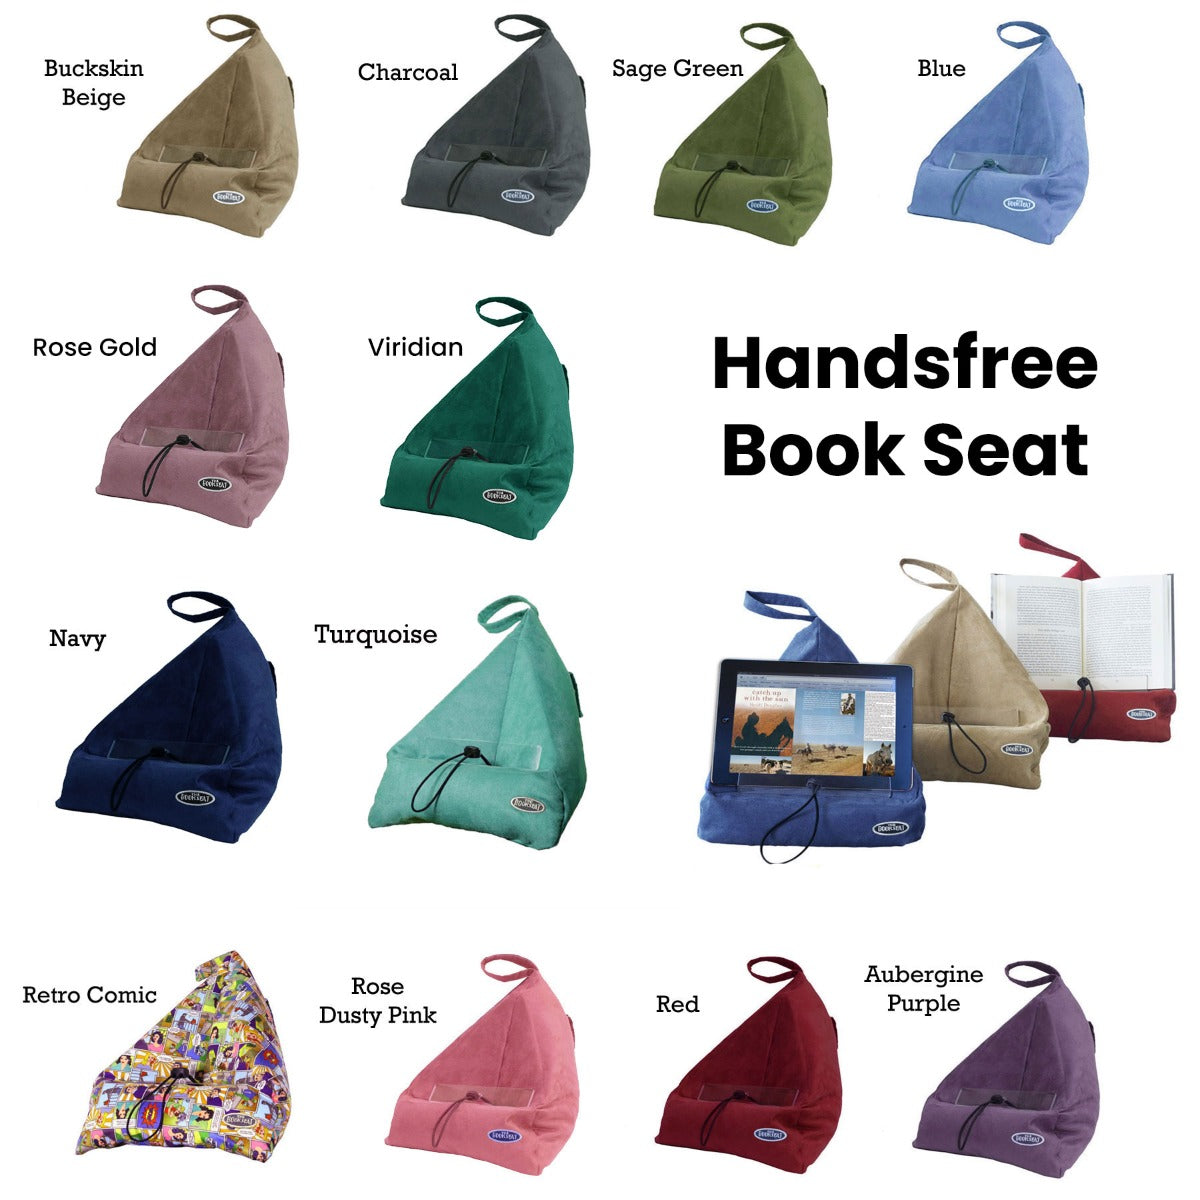 The Book Seat Handsfree Book Seat Purple / Aubergine